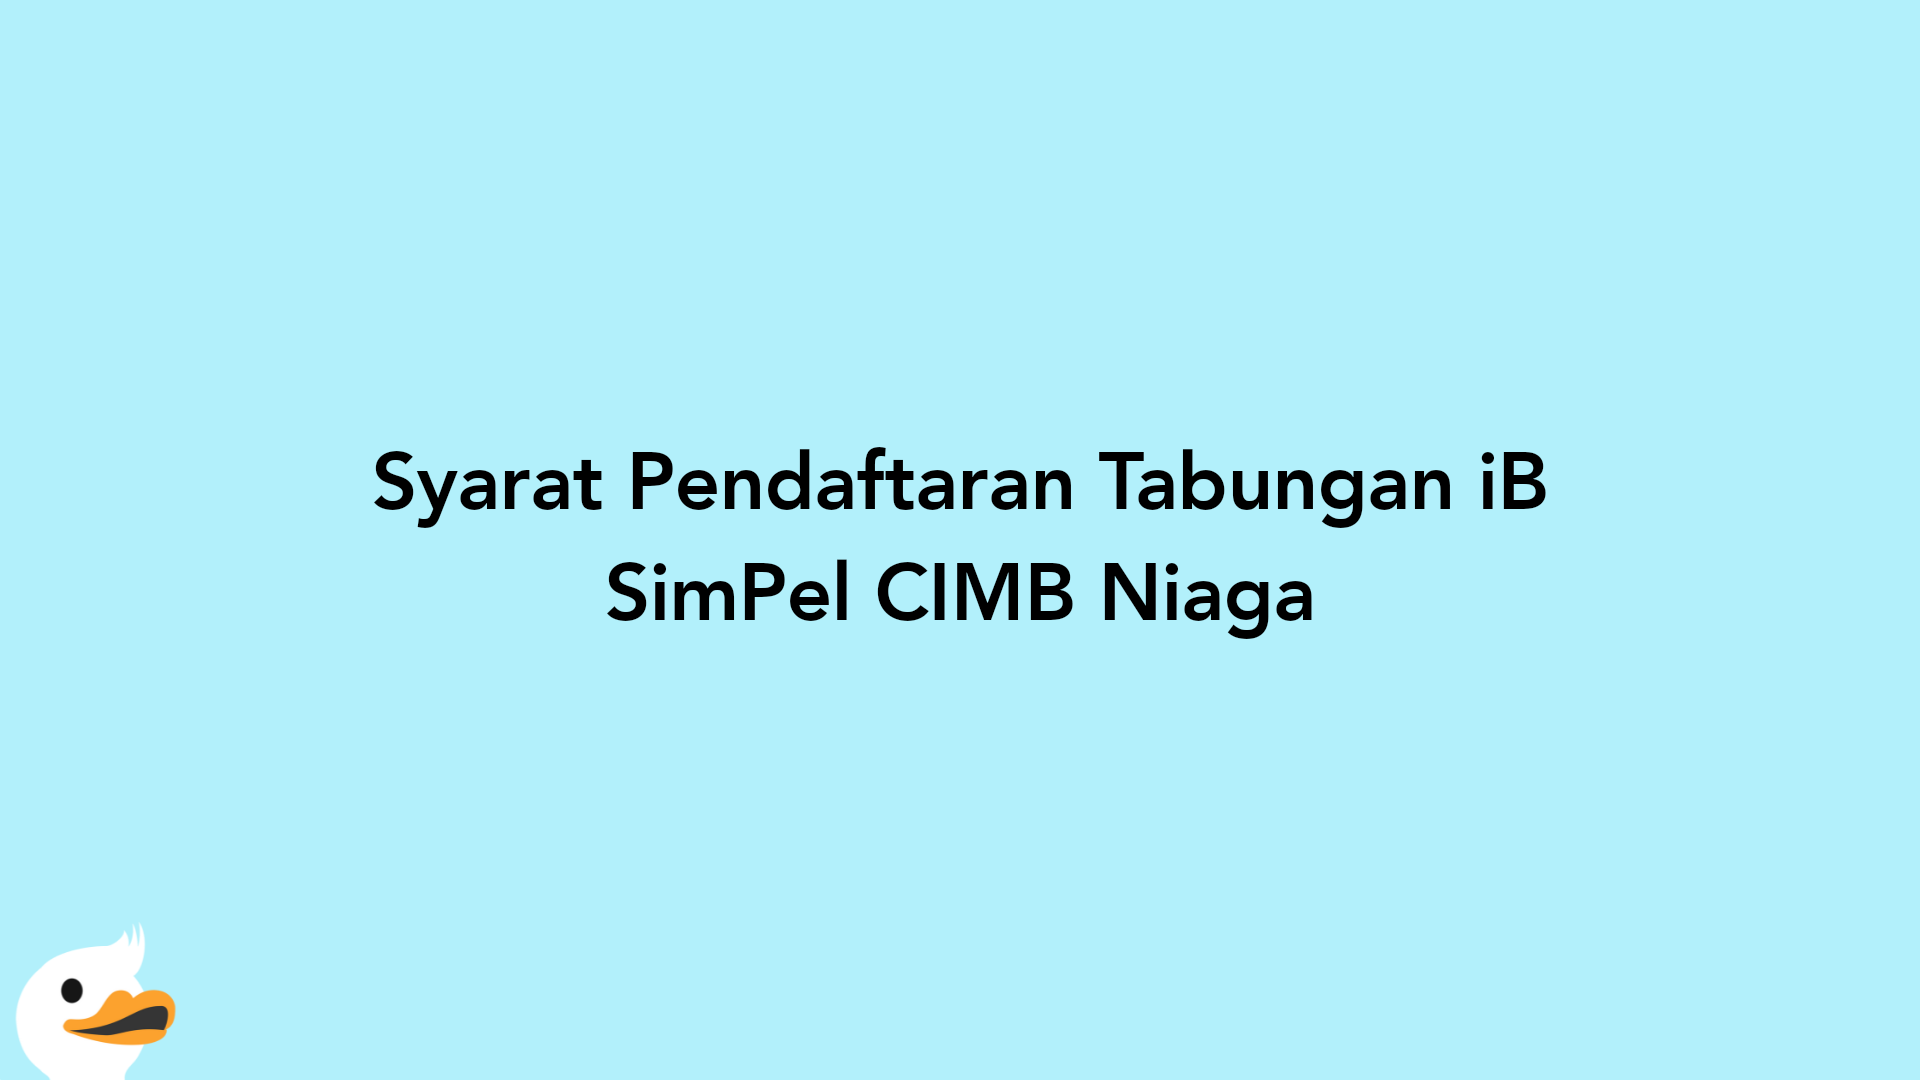 Syarat Pendaftaran Tabungan iB SimPel CIMB Niaga